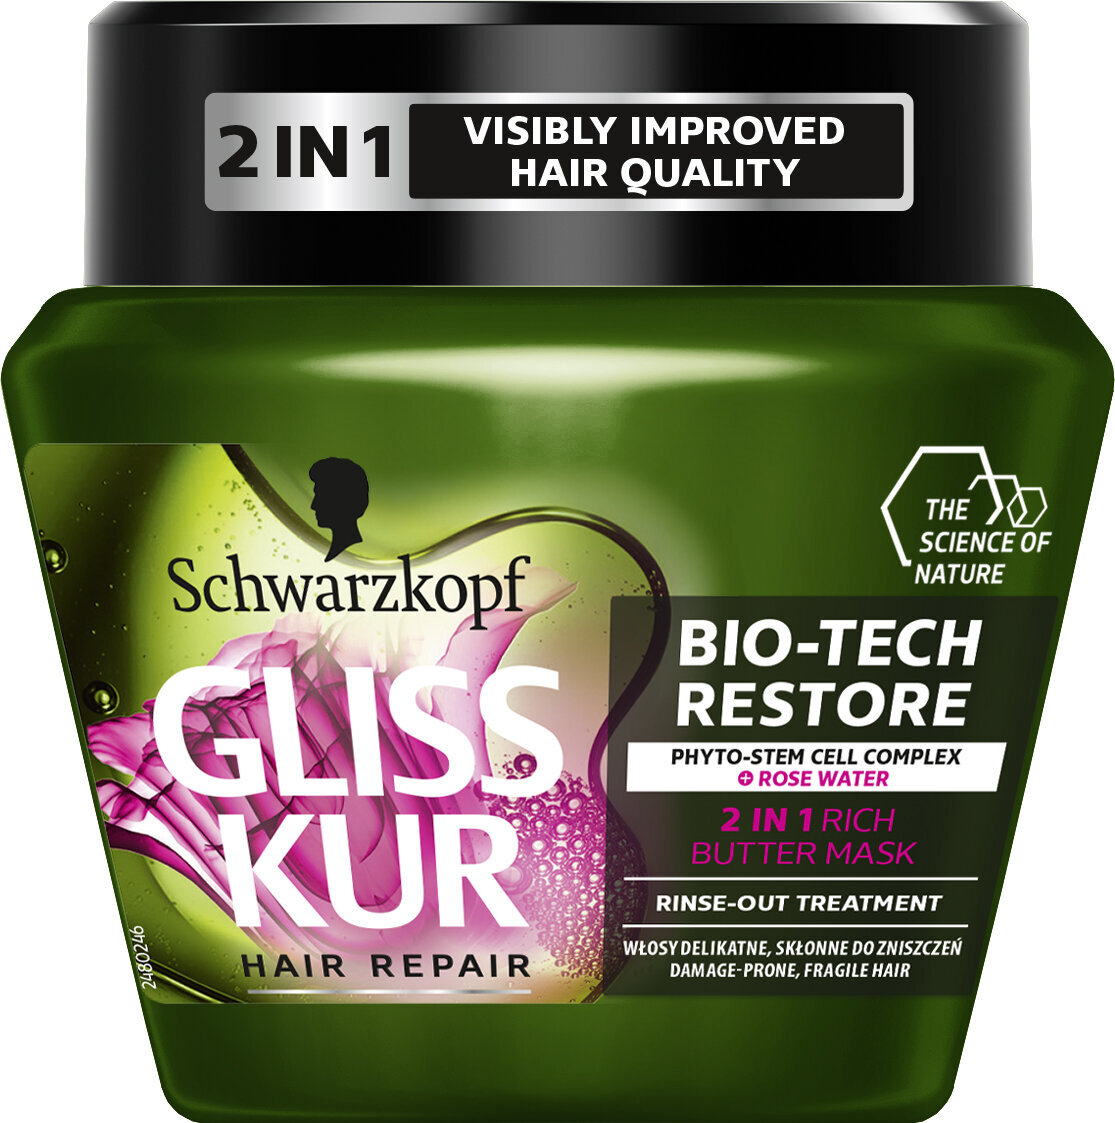 Plaukų kaukė Schwarzkopf GLISS KUR BIO-TECH Restore 300 ml kaina | pigu.lt